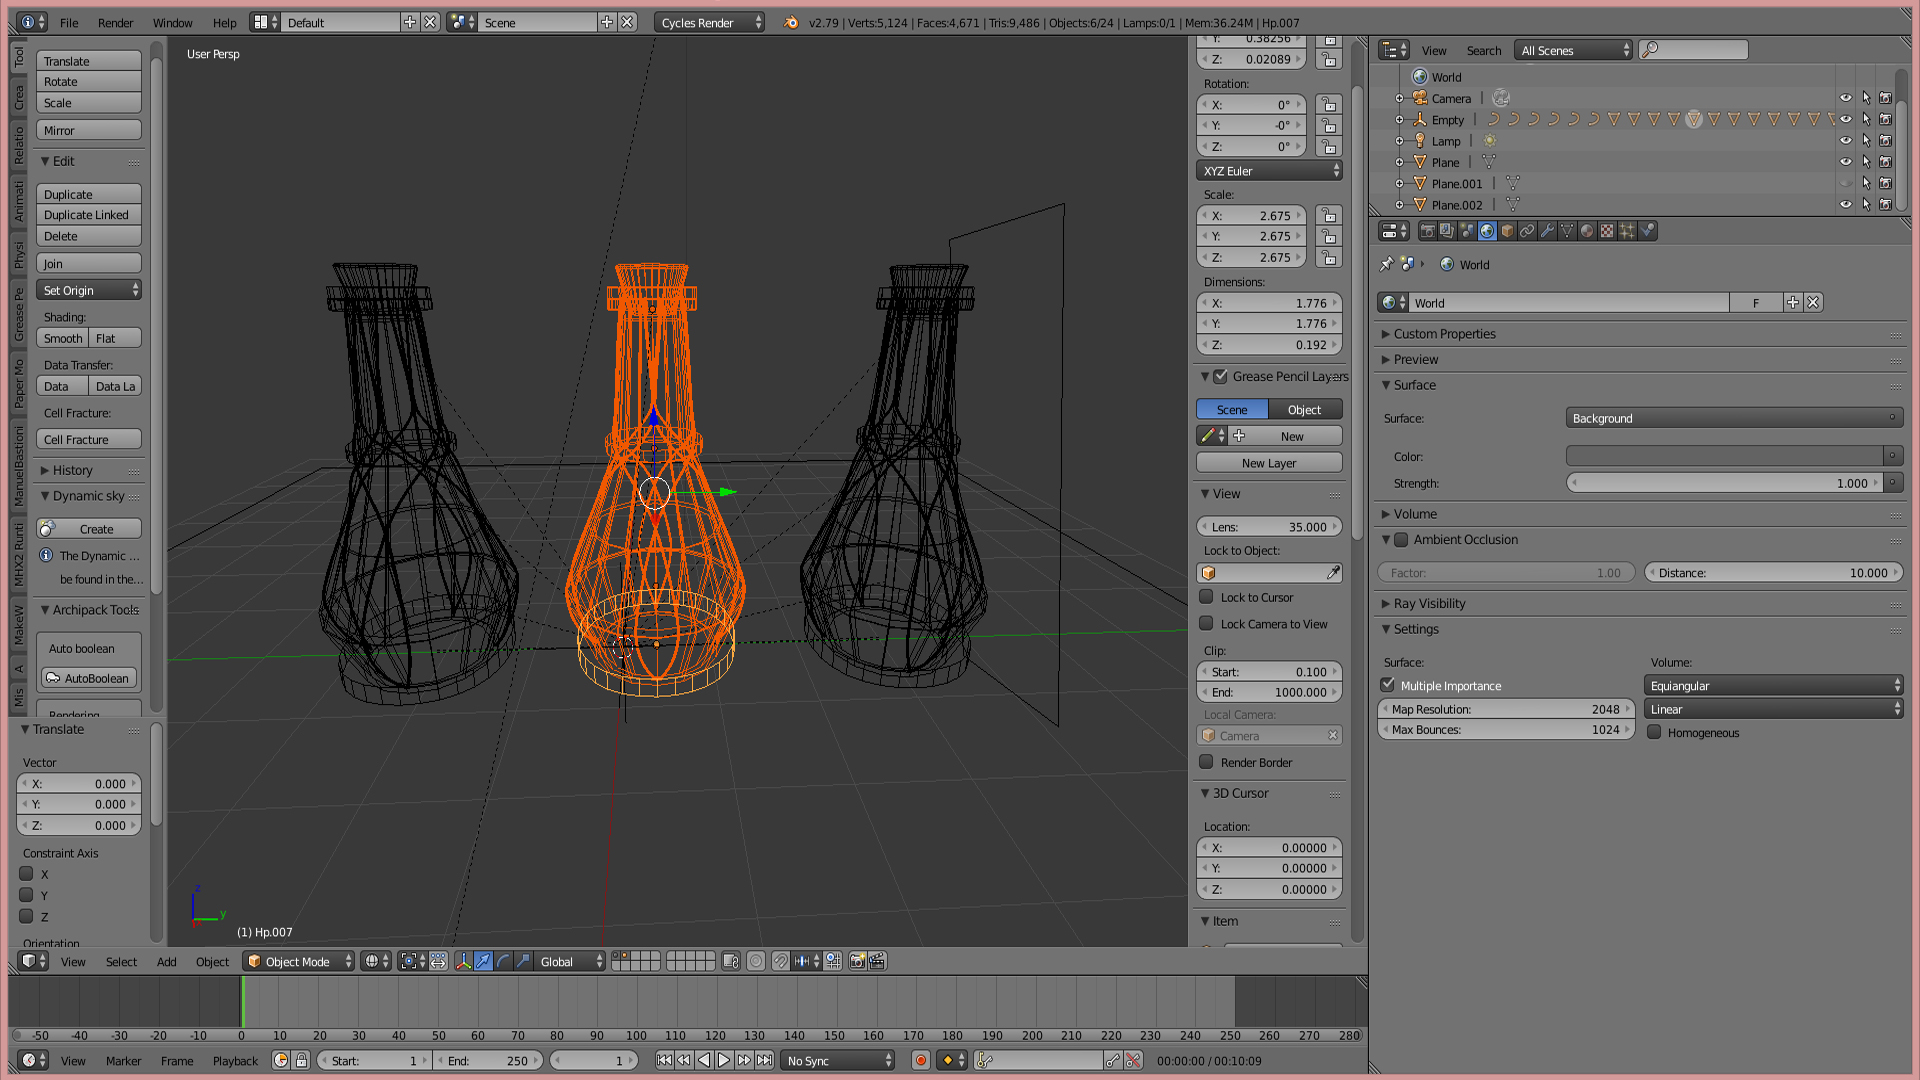 3D Poison Bottle - Game asset in Blender cycles render image